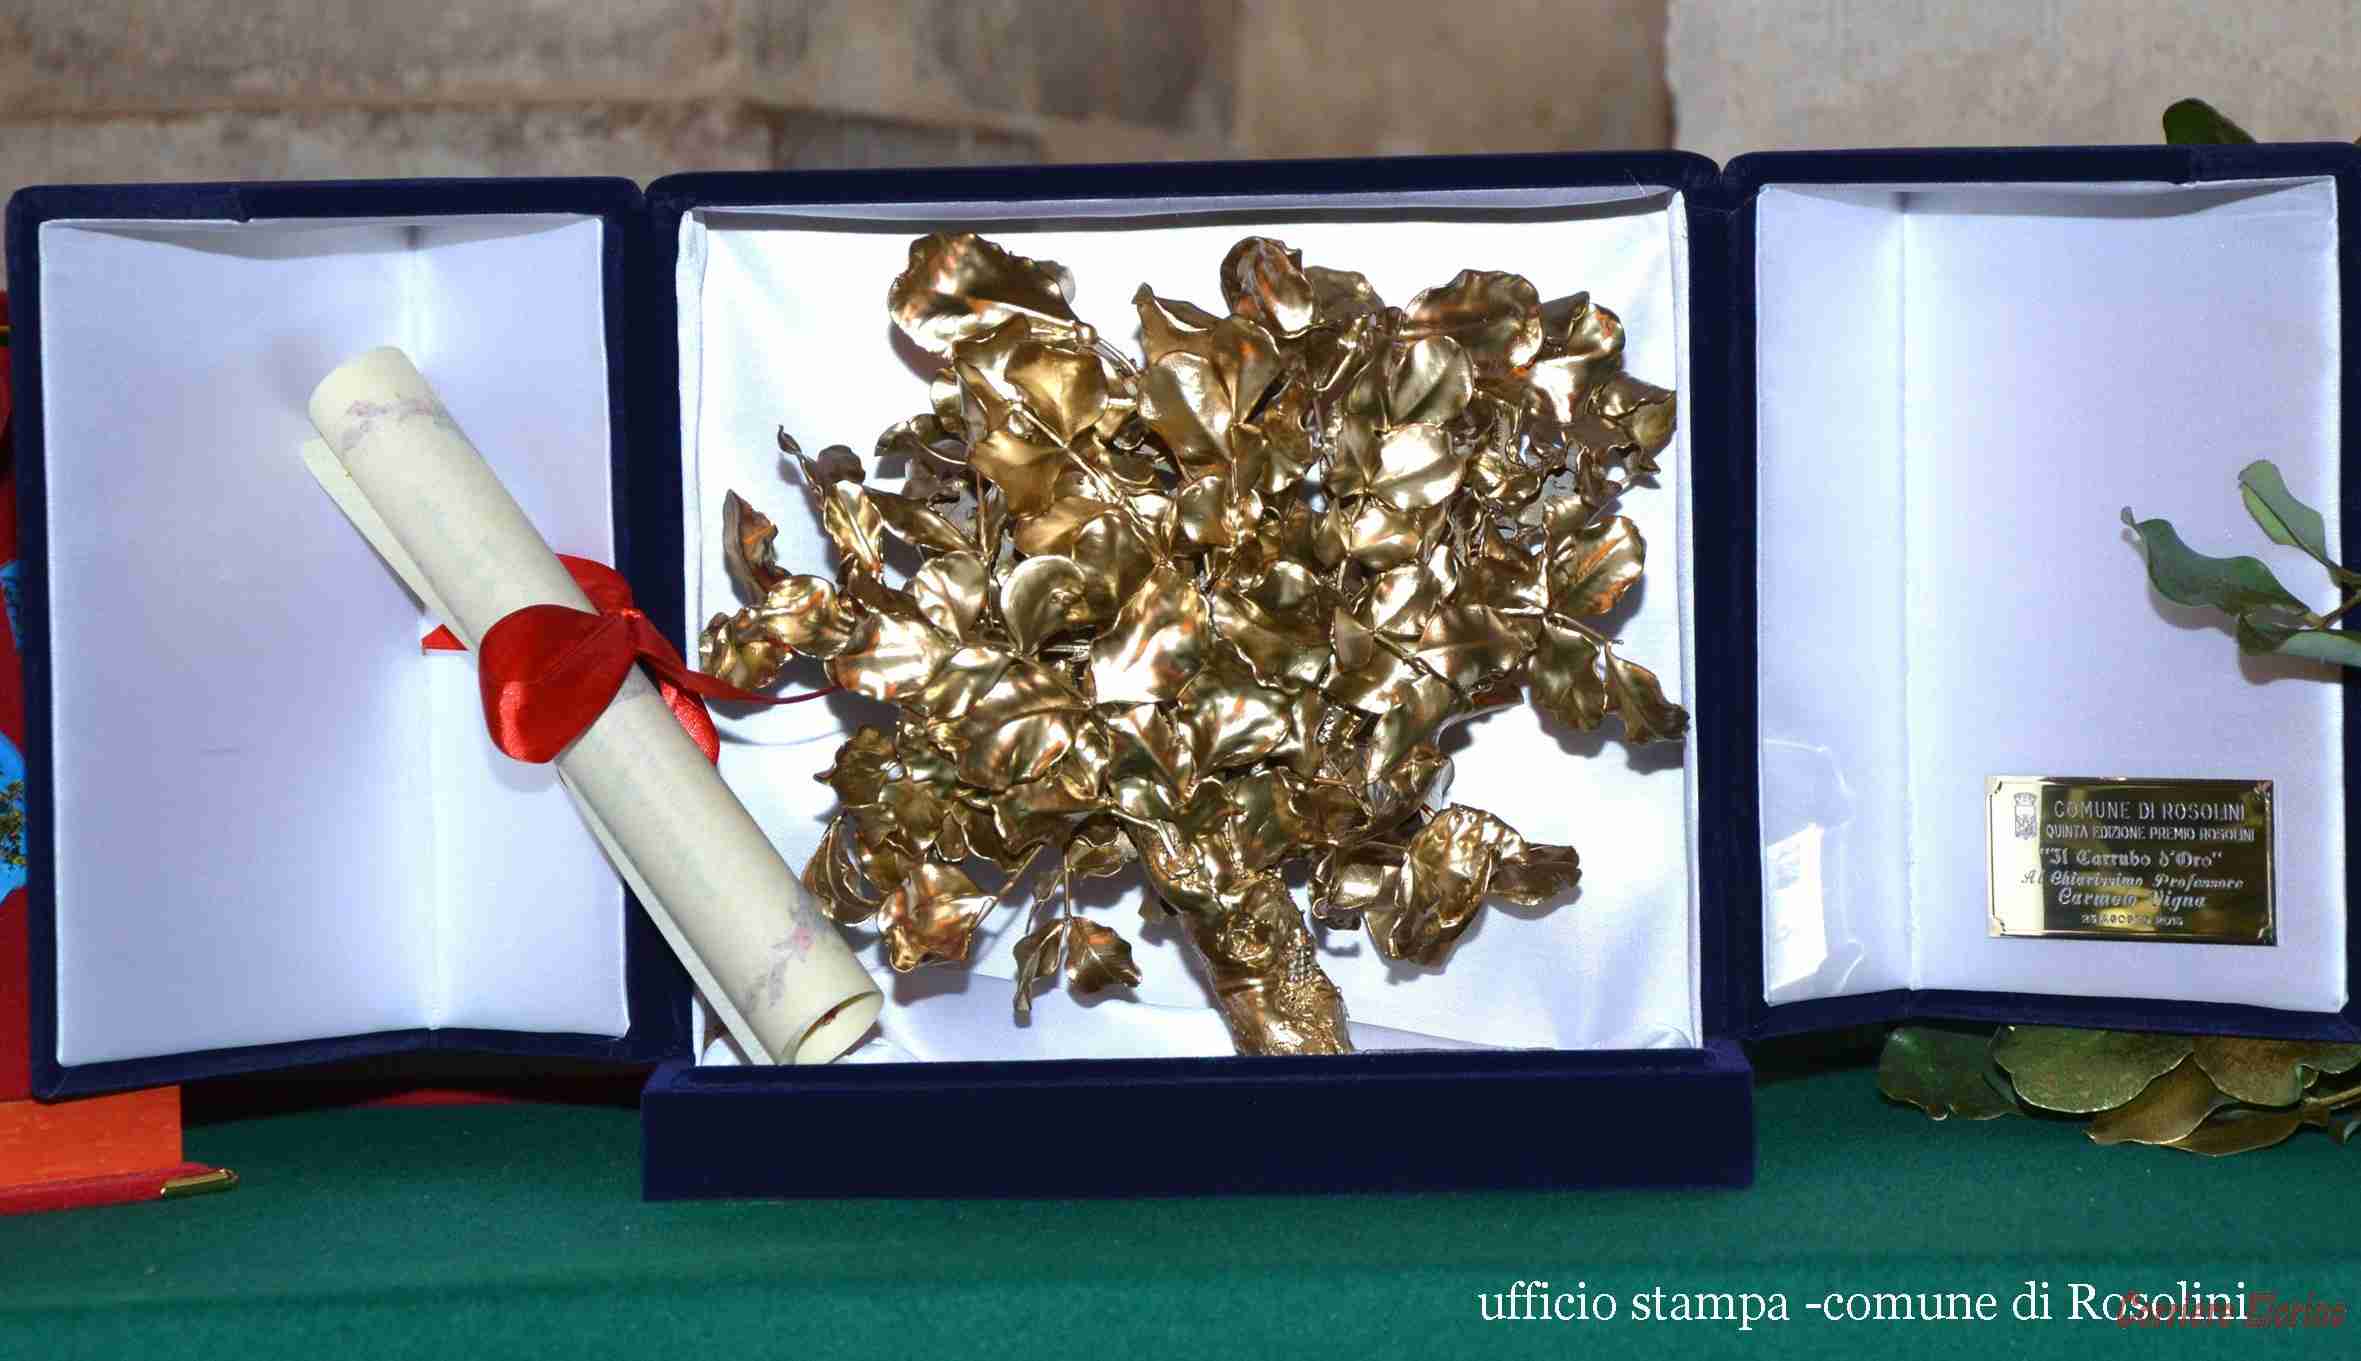 In onda sulla tv regionale la cerimonia di consegna del “Carrubo d’oro”